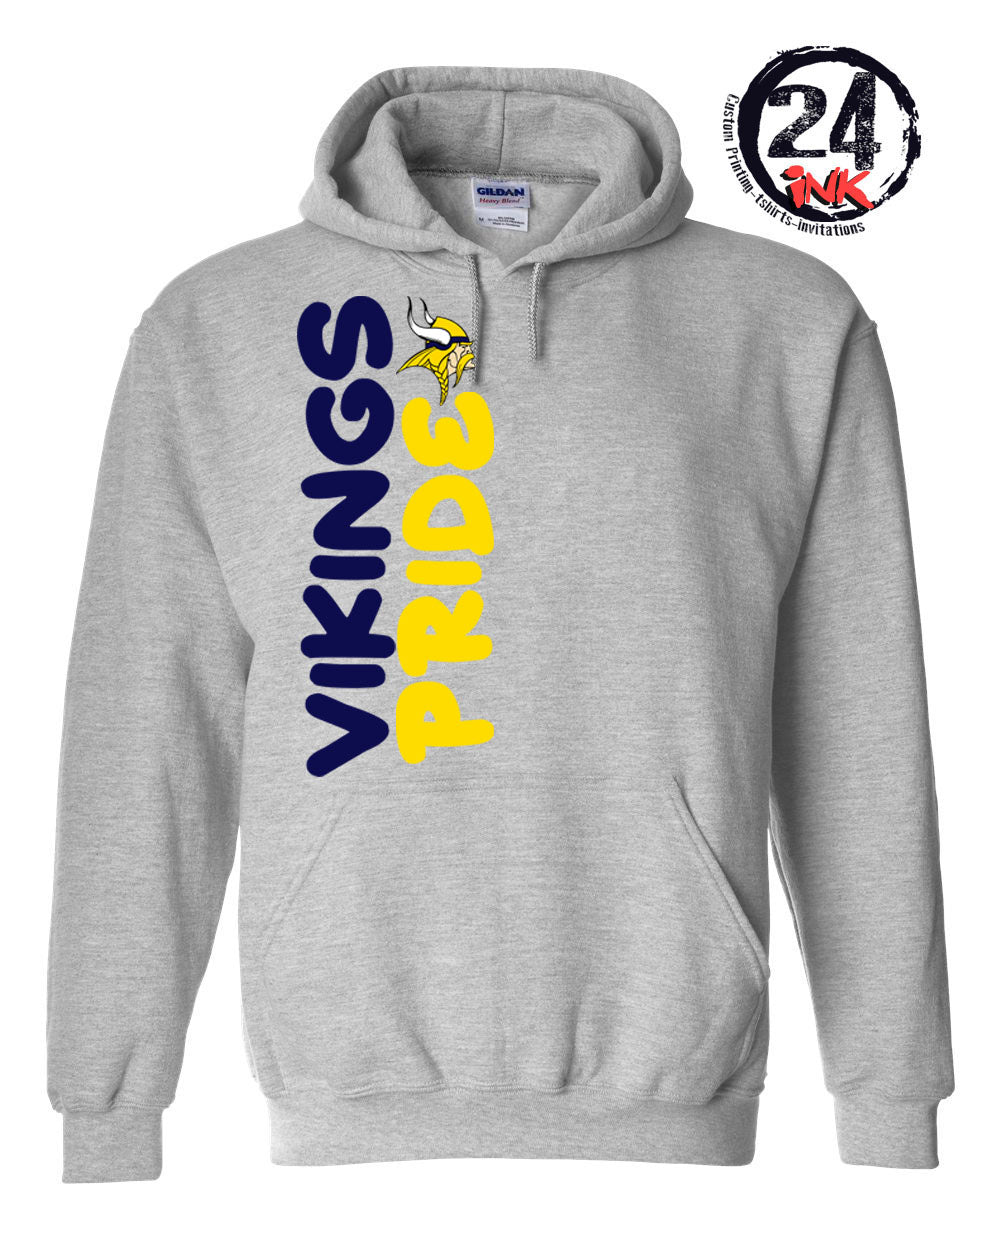 Vikings Pride Hooded Sweatshirt